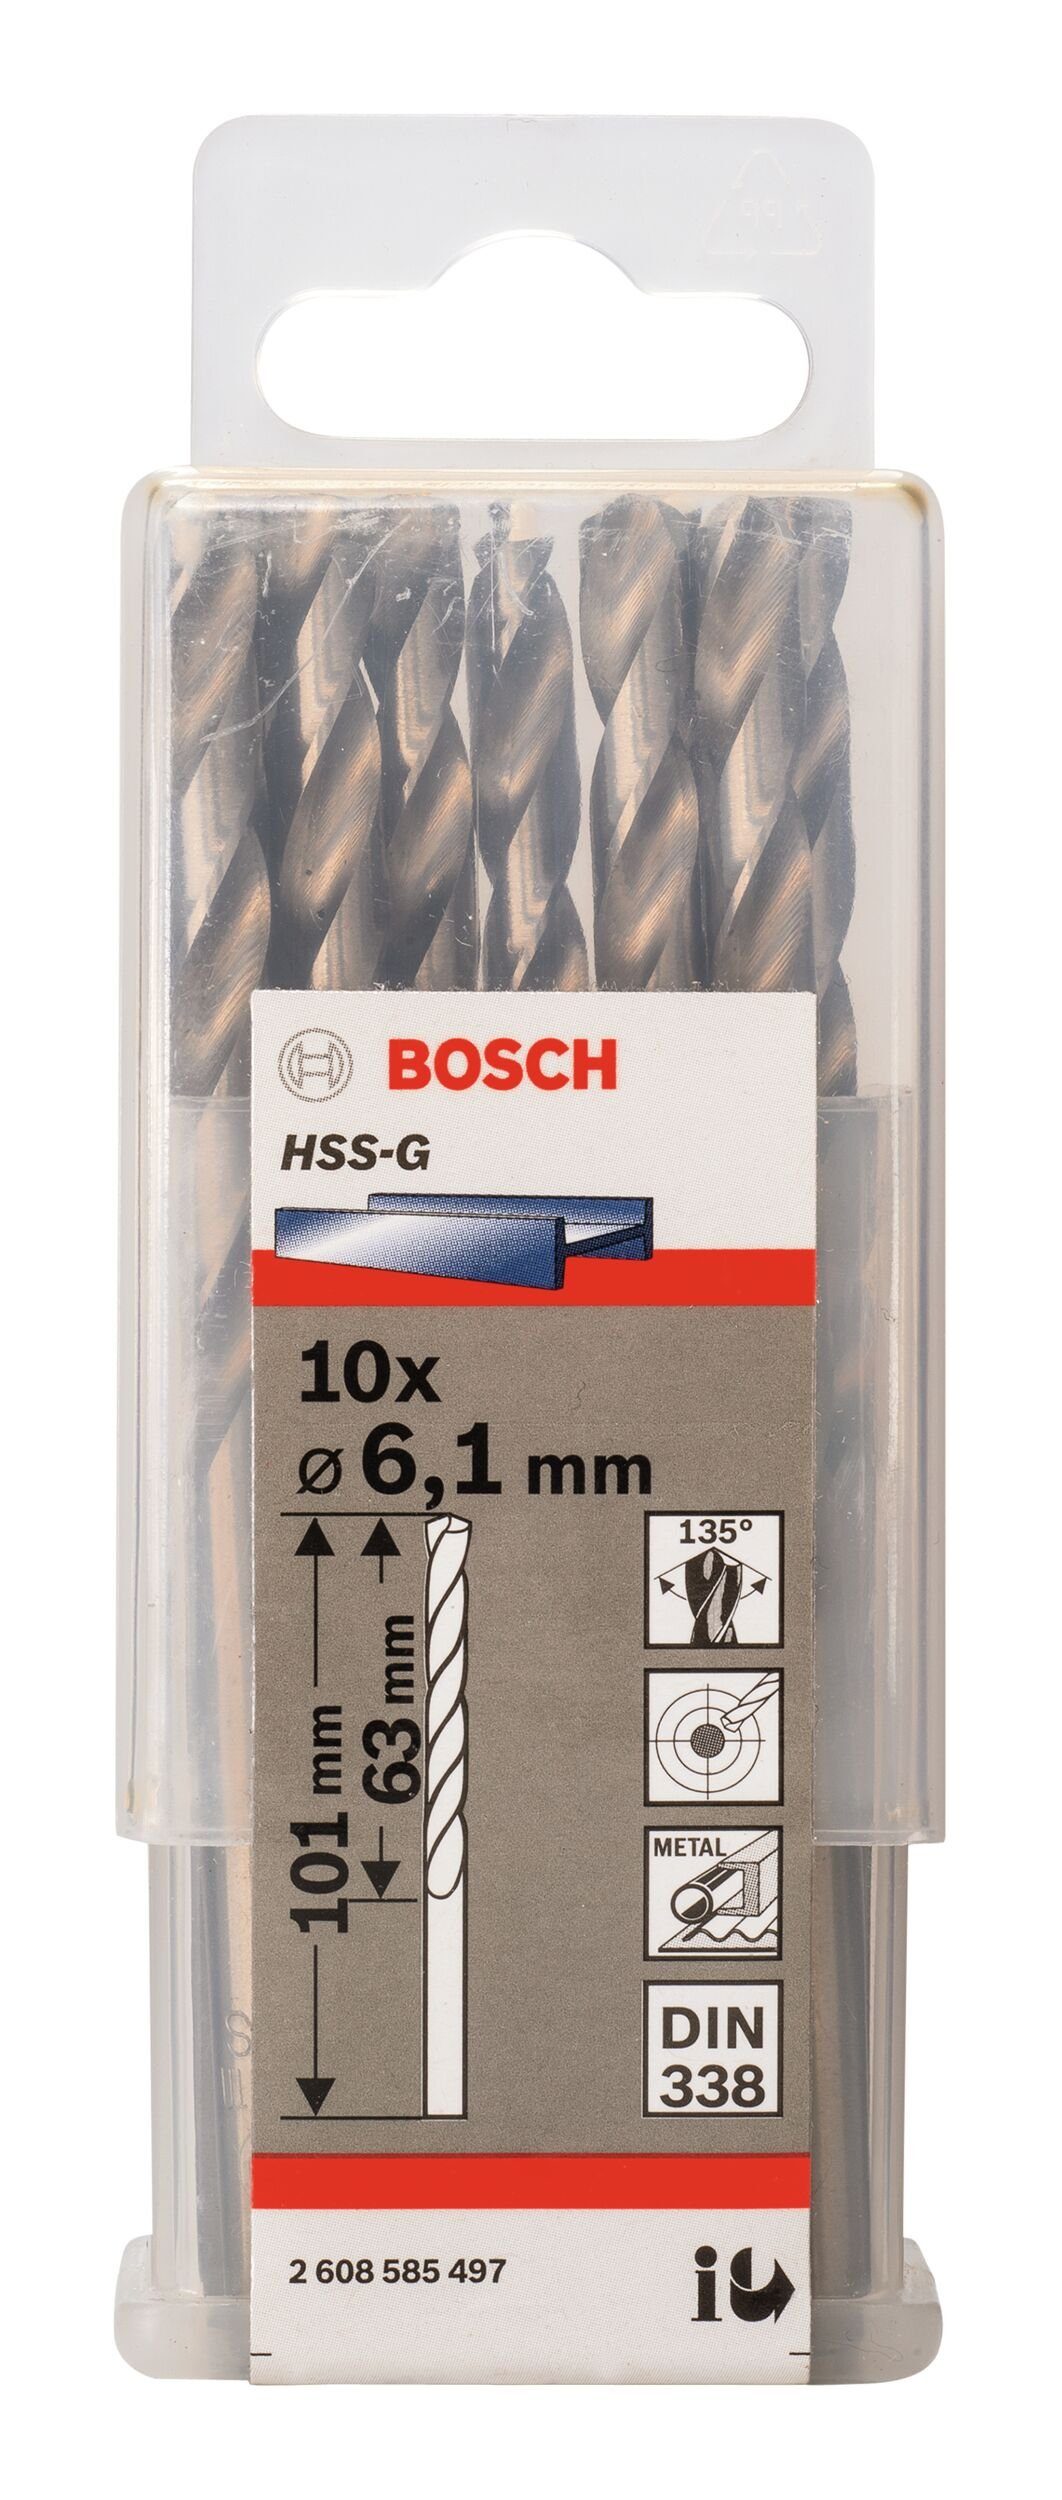 Metallbohrer, 10er-Pack mm x HSS-G (DIN 63 (10 - - 101 6,1 338) BOSCH x Stück),